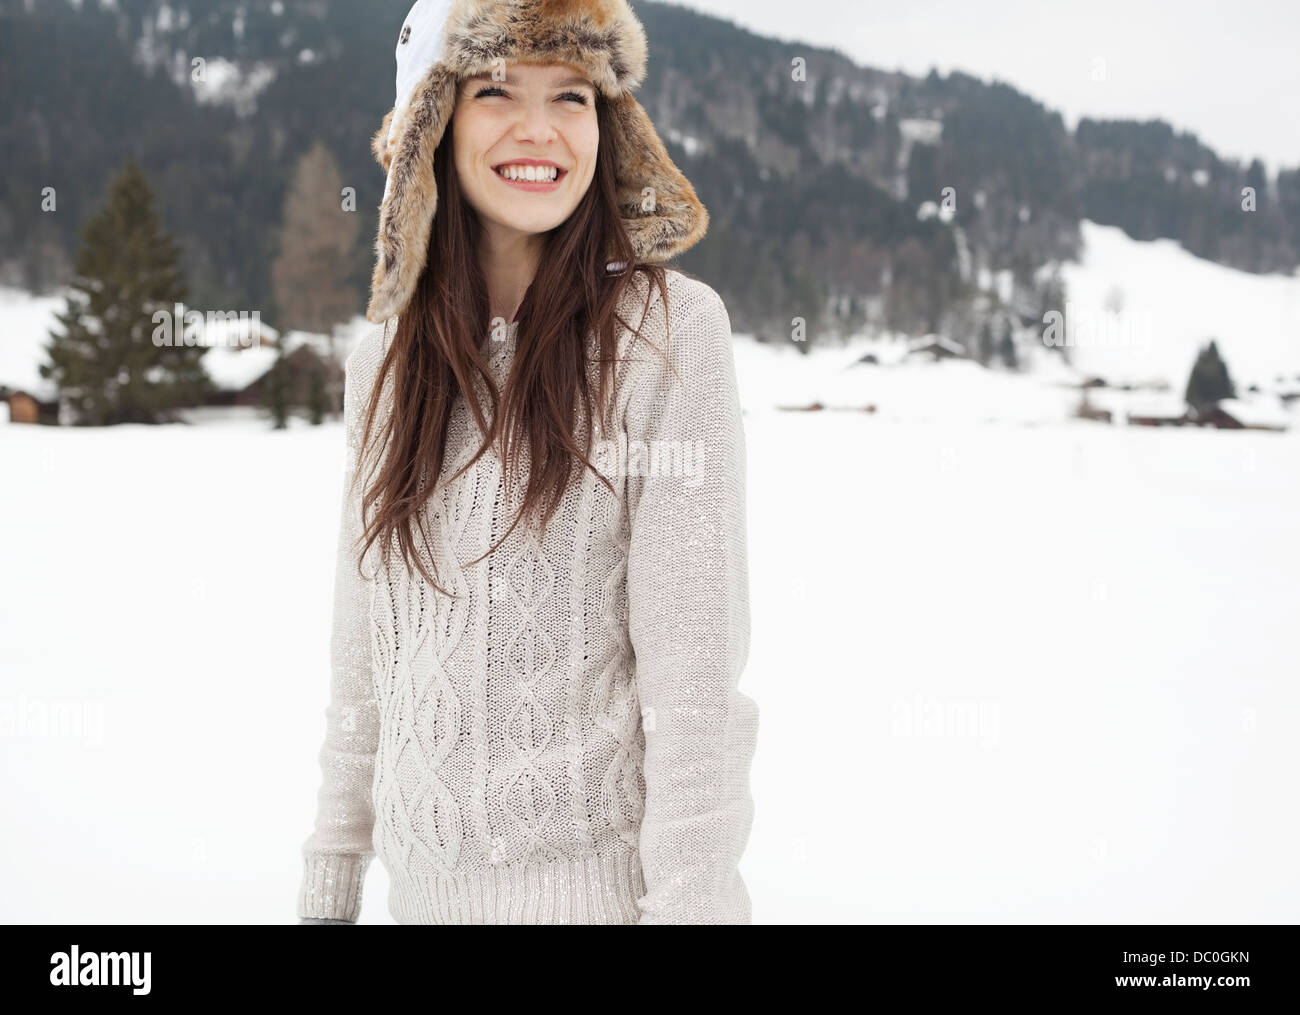 Happy woman wearing fur hat in snowy field Stock Photo